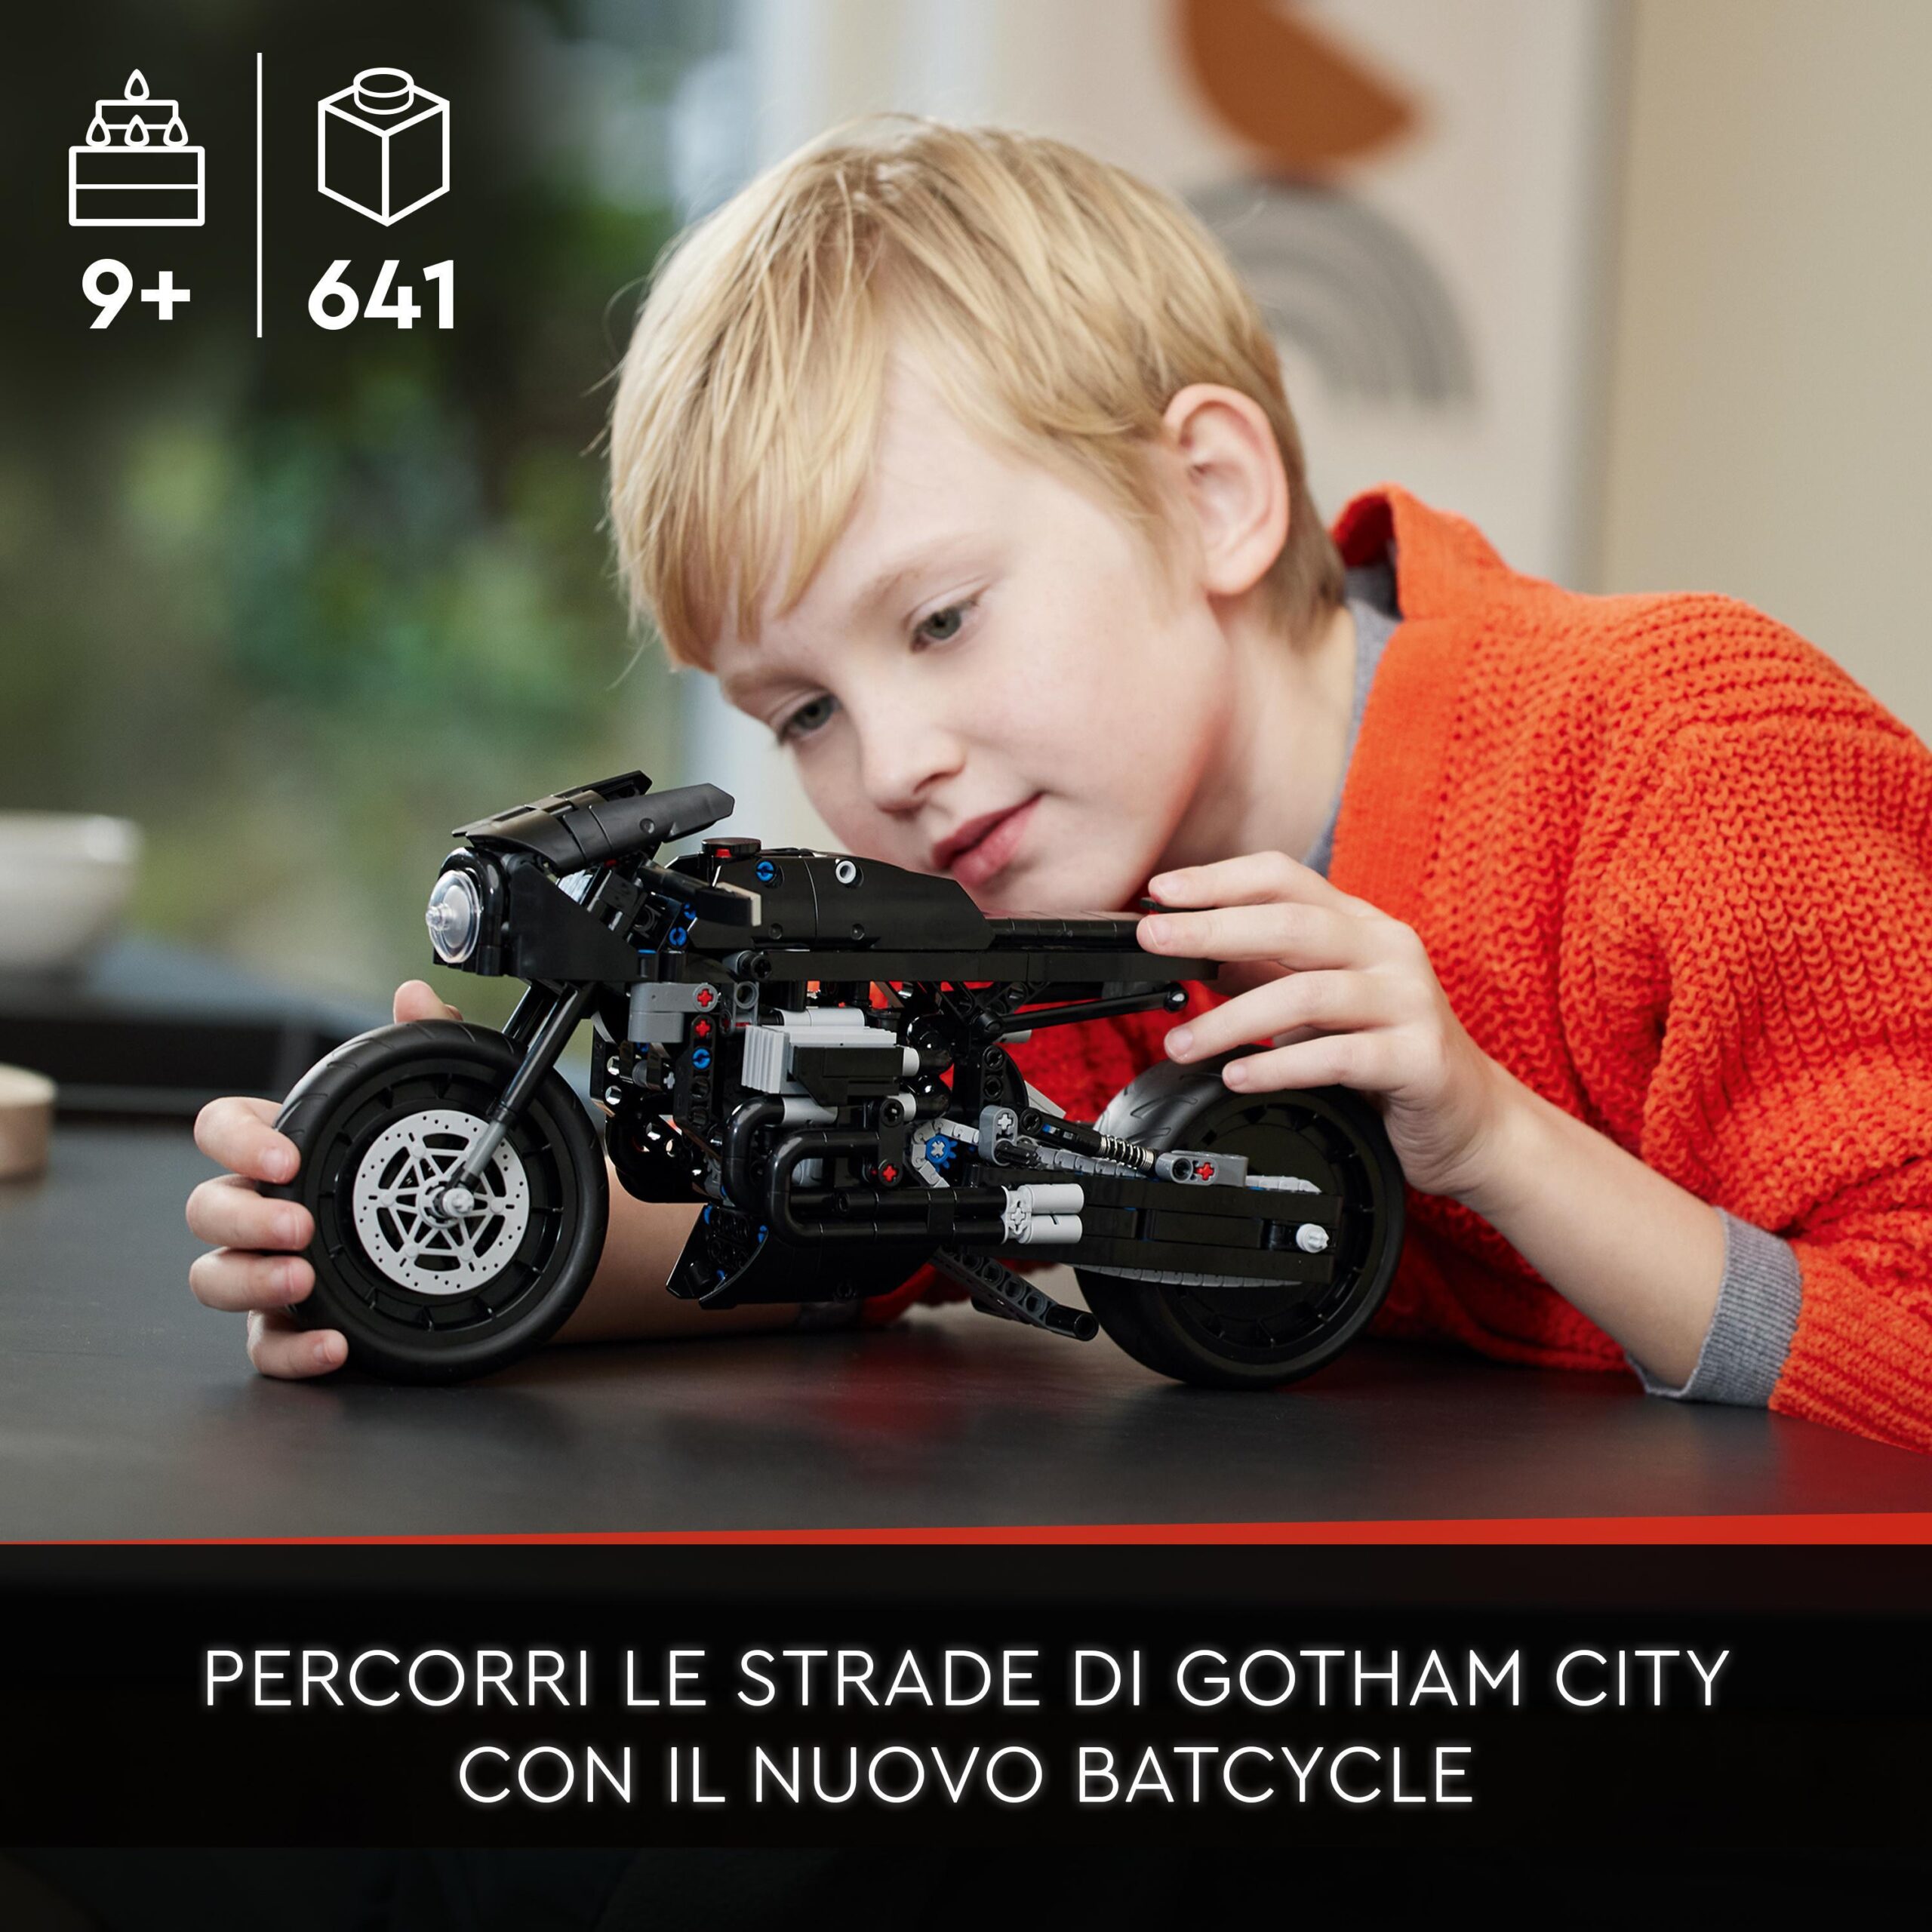 Lego technic 42155 the batman – batcycle, moto giocattolo da collezione, modellino motocicletta del supereroe, film del 2022 - LEGO TECHNIC